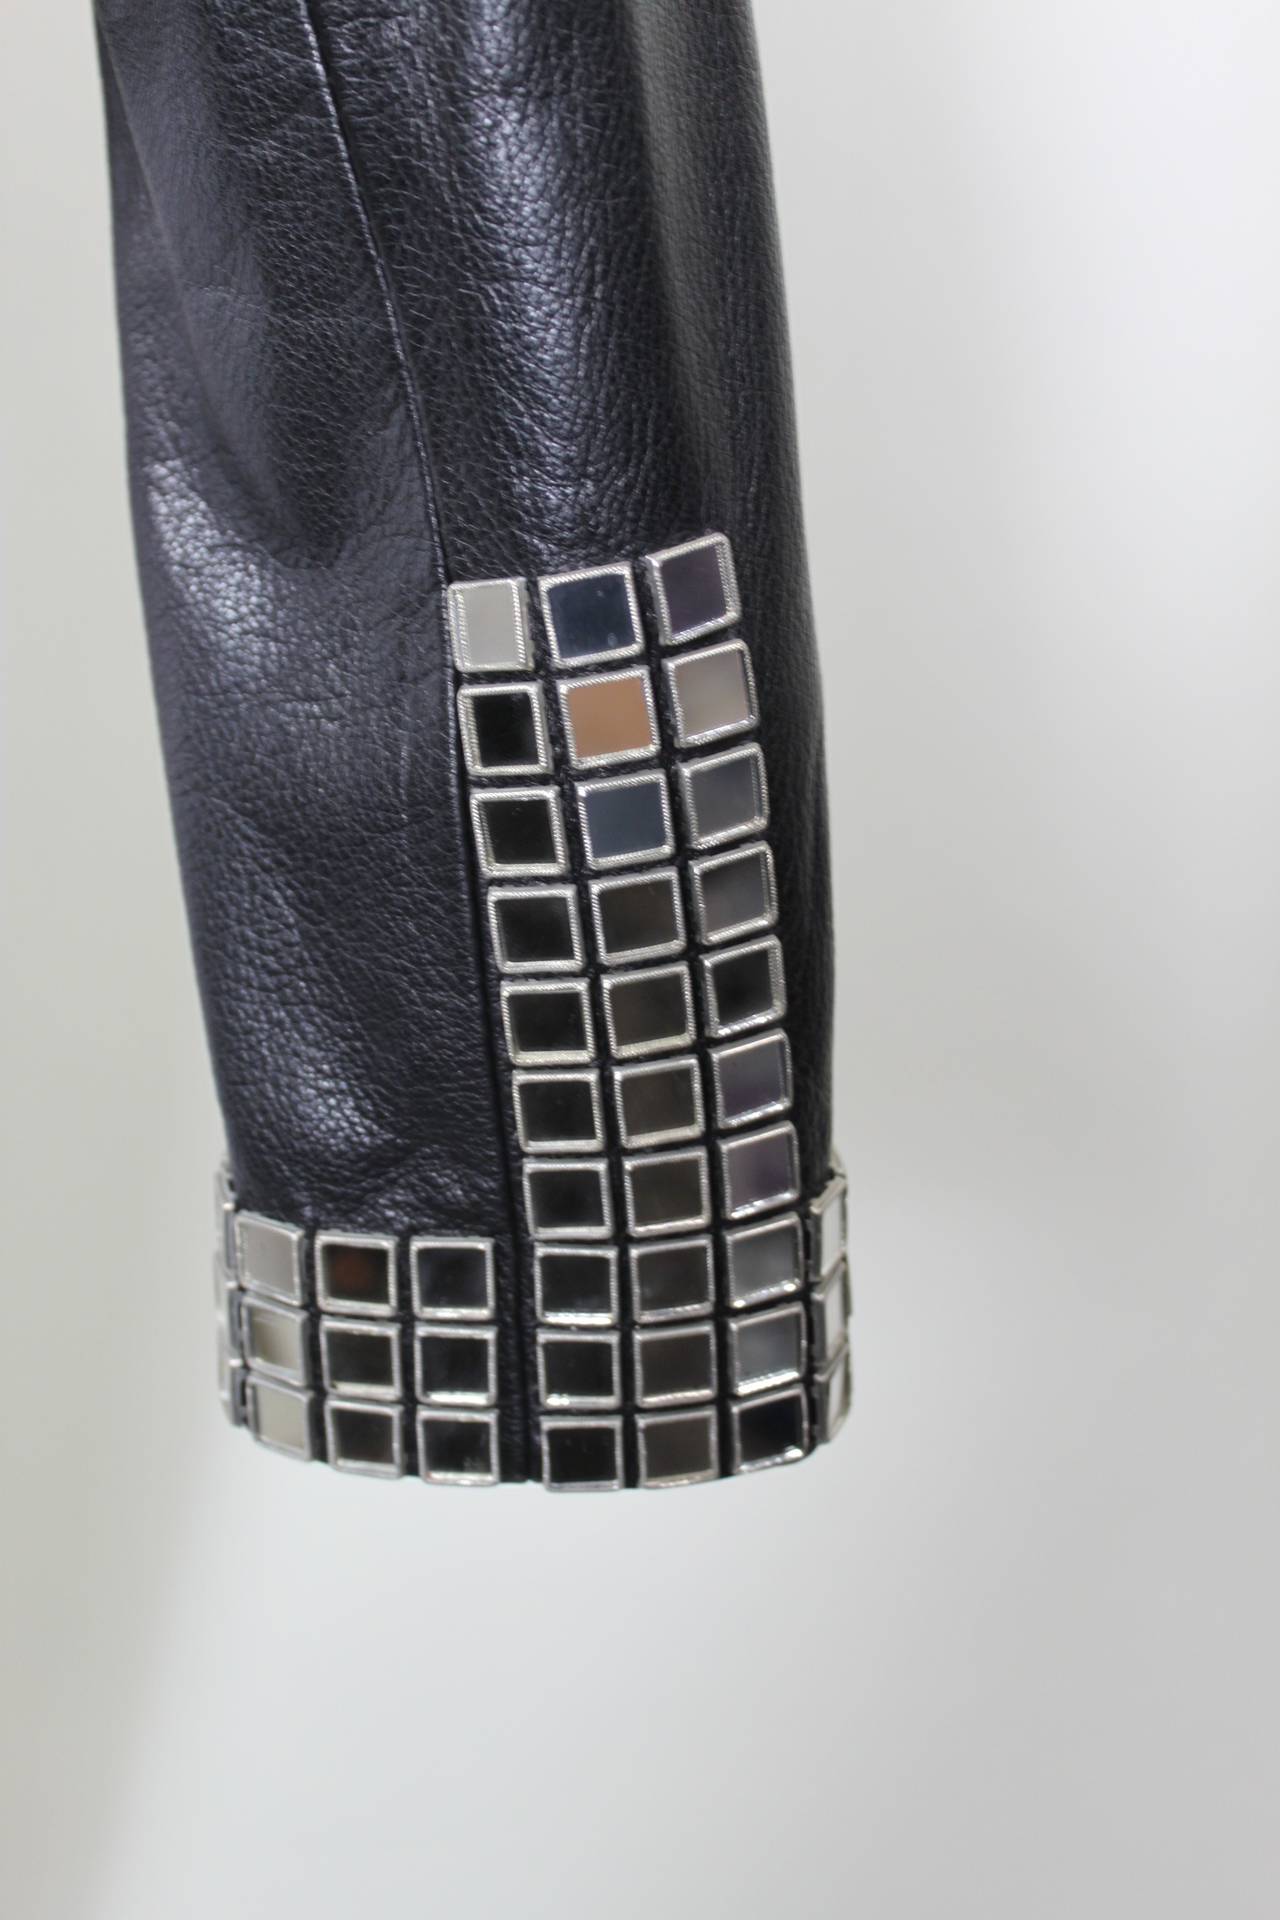 MOSCHINO Leather Moto Jacket with Disco Mirror Appliqués 3